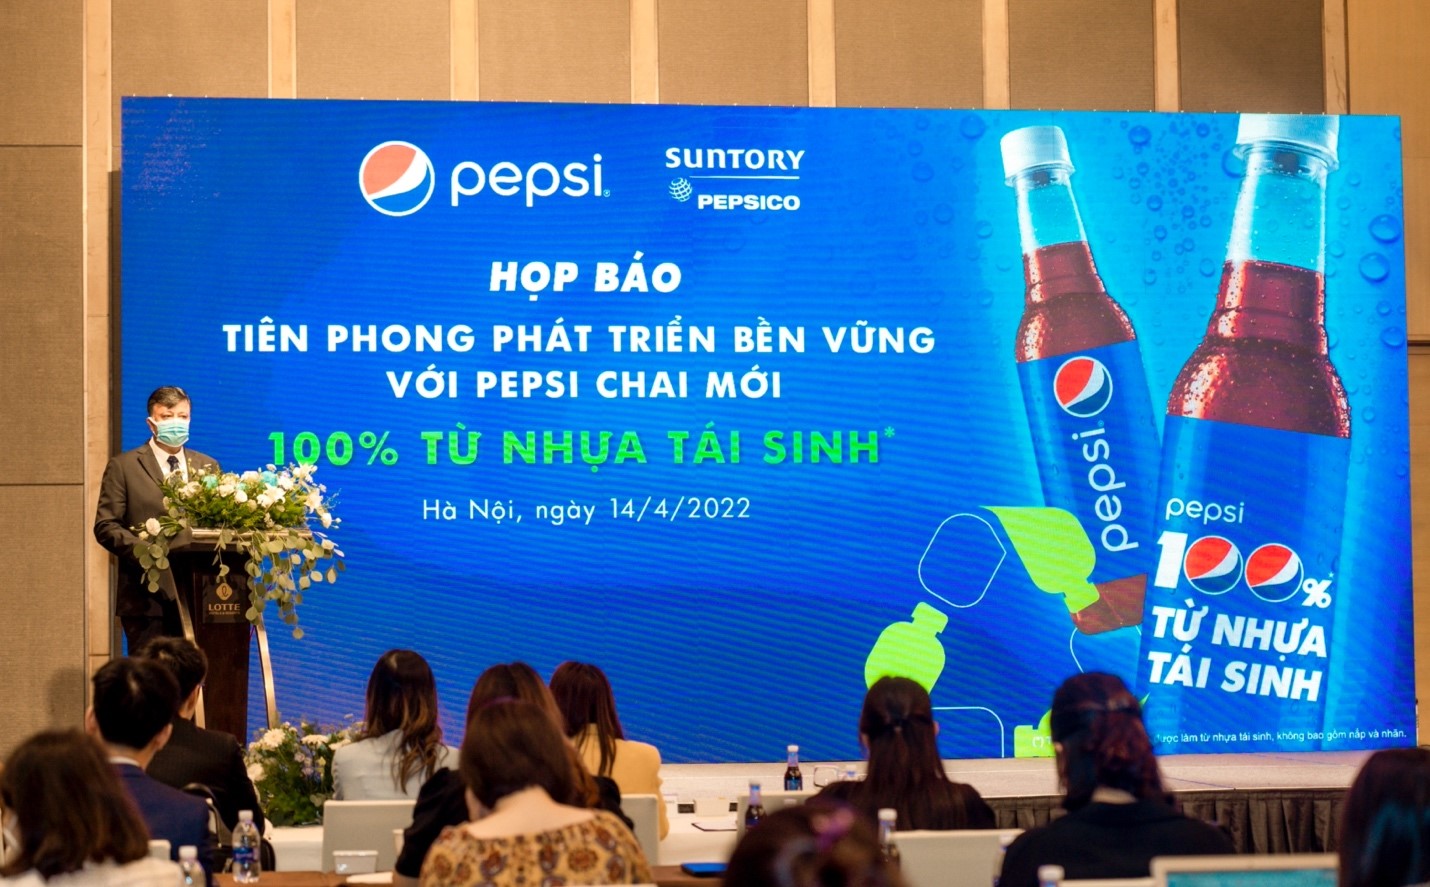 Sản phẩm Pepsi bao bì mới 100% từ nhựa tái sinh và hướng phát triển bền vững của ông lớn ngành giải khát